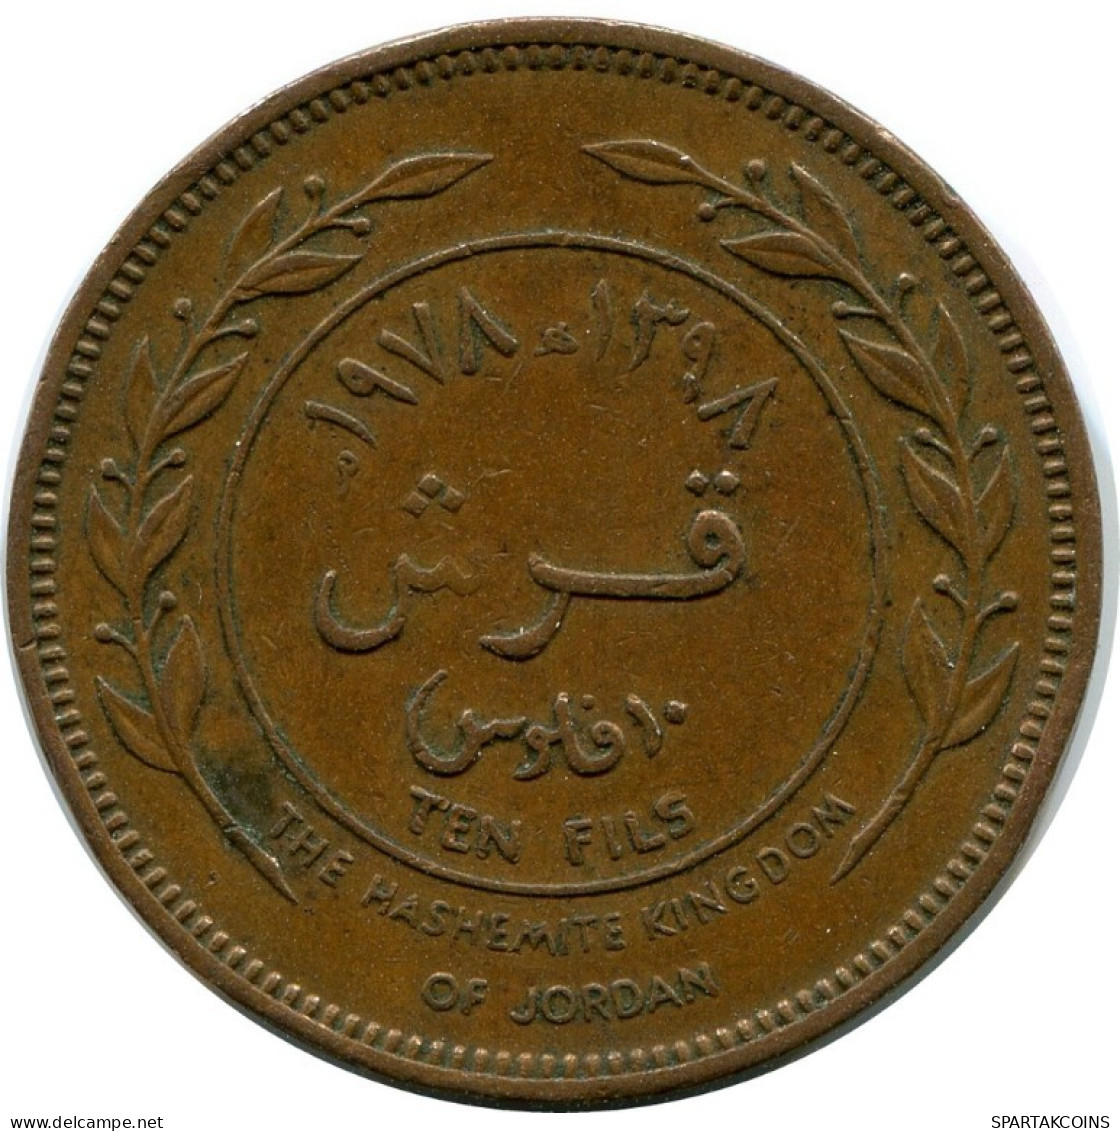 10 FILS 1398-1978 JORDAN Islamisch Münze #AK149.D.A - Jordanie